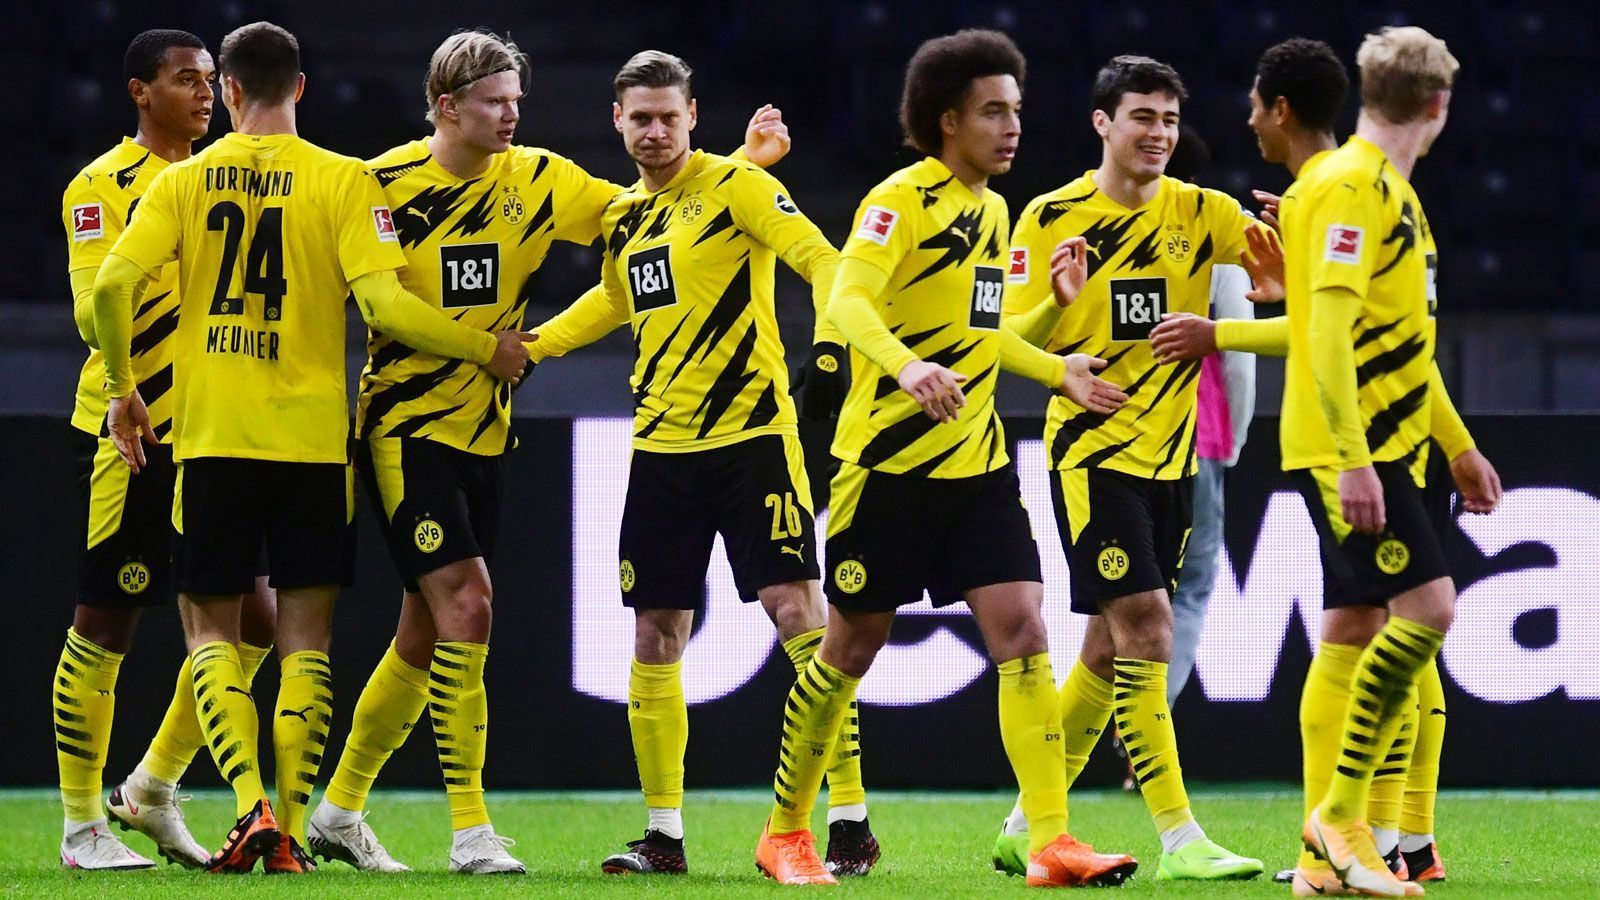 
                <strong>Platz 2: Borussia Dortmund</strong><br>
                Medienerlöse 2020/21: 94,95 Millionen Euro -Davon 73,34 Mio. national und 21,61 international.
              